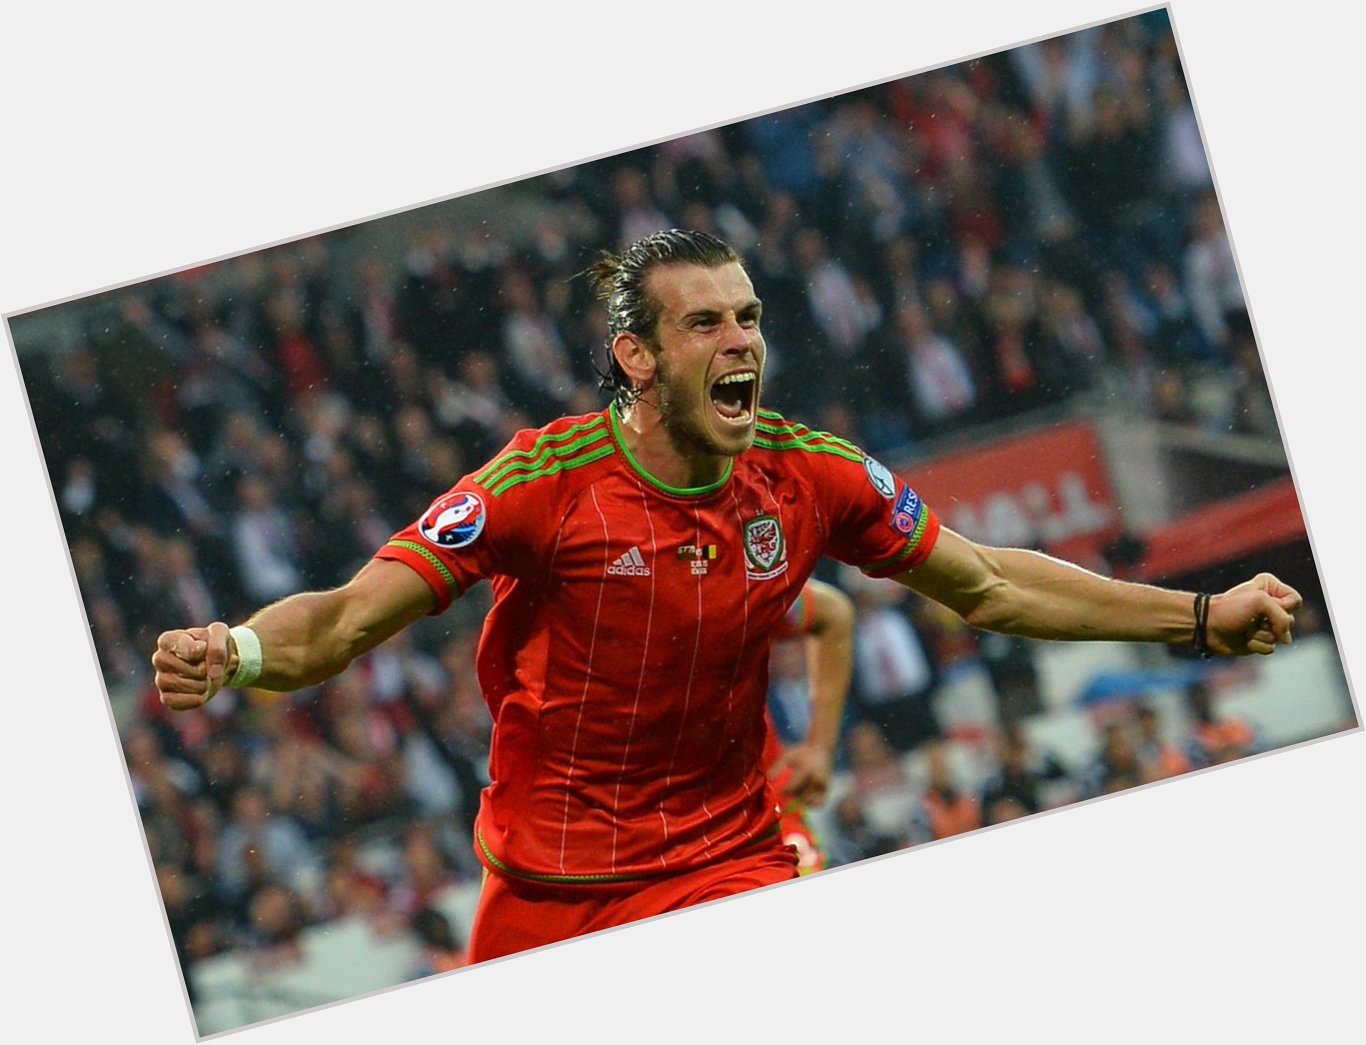 Happy Birthday to Welsh superstar Gareth Bale!  